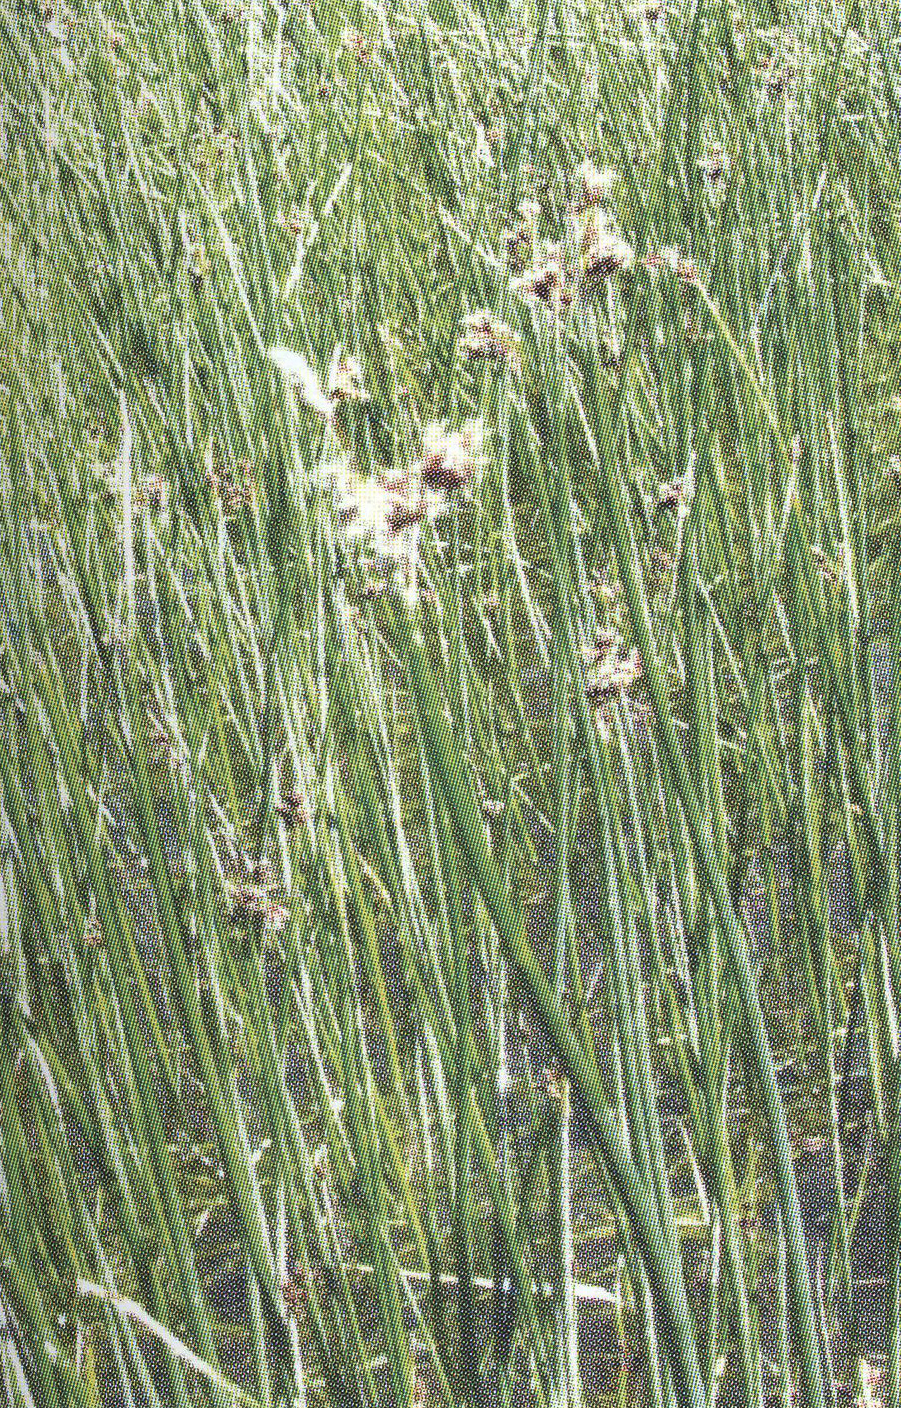 Камыш озерный Scirpus lacustris